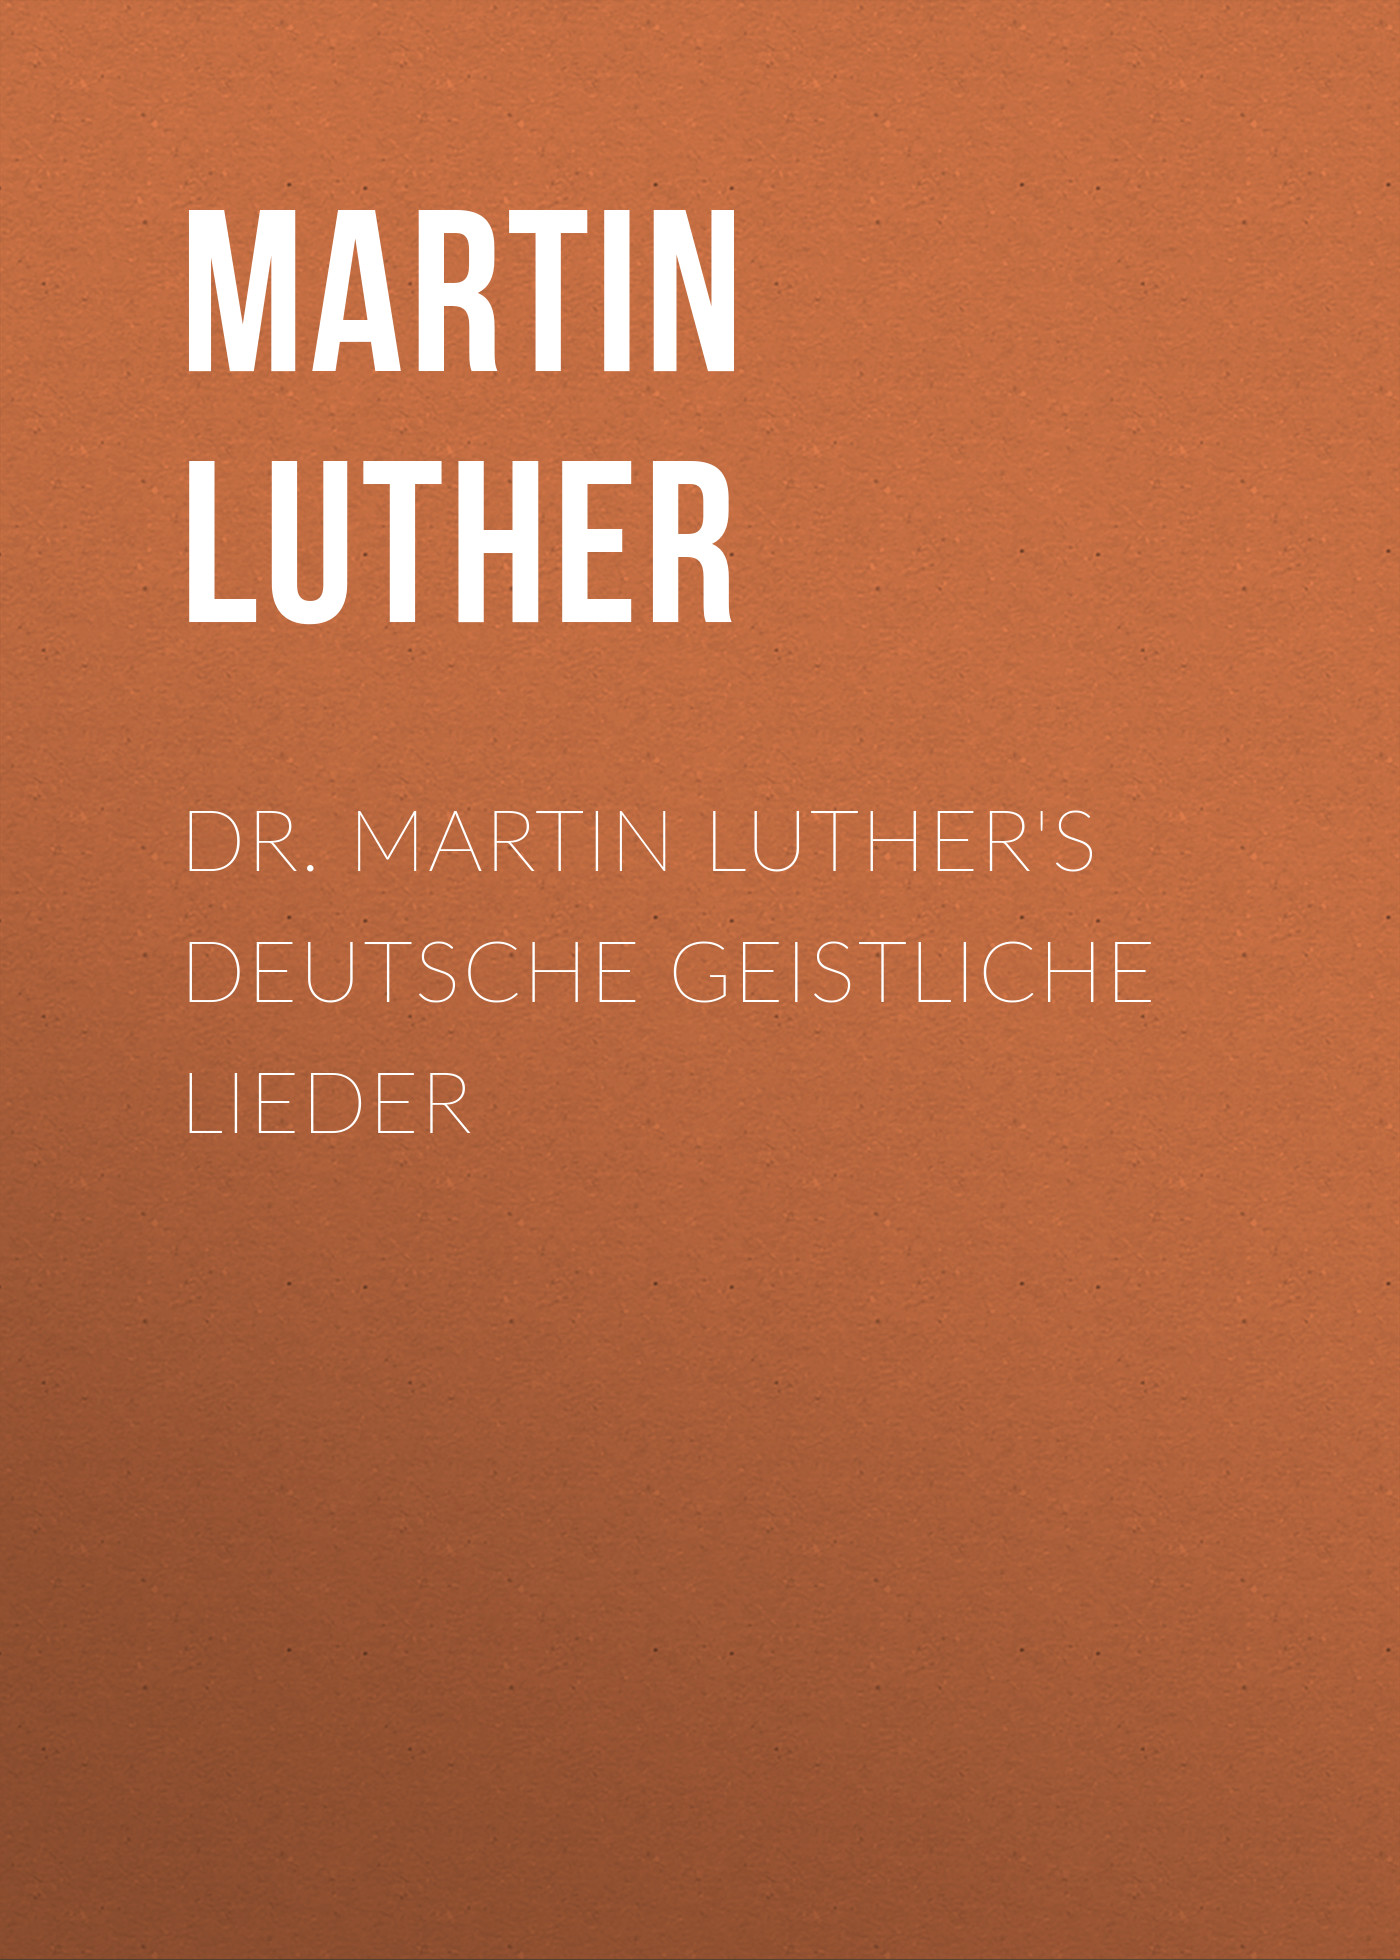 Книга Dr. Martin Luther's Deutsche Geistliche Lieder из серии , созданная Martin Luther, может относится к жанру Зарубежная классика, Зарубежная эзотерическая и религиозная литература, Философия, Зарубежная психология, Зарубежная старинная литература. Стоимость электронной книги Dr. Martin Luther's Deutsche Geistliche Lieder с идентификатором 35008073 составляет 0 руб.